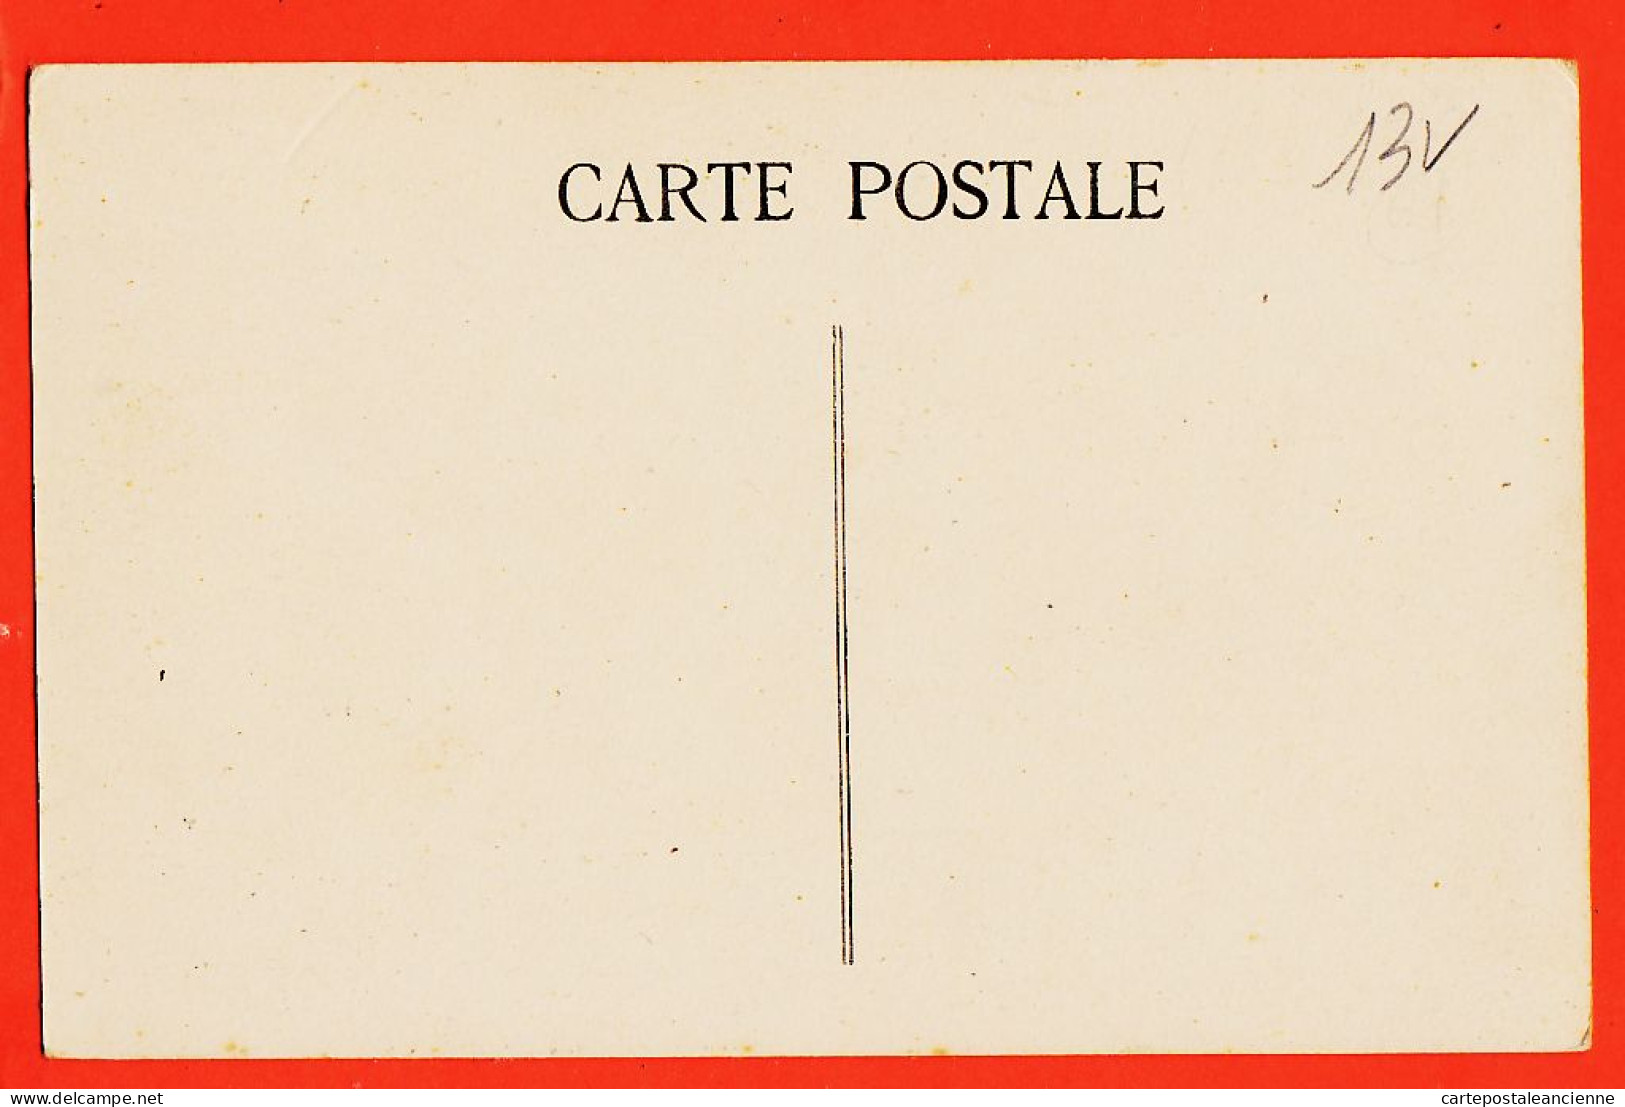 09932 / ⭐ 61-MORTAGNE-sur-ORNE ◉ Vue Prise Du Clocher De Ecole BIGNON 1910s ◉ Collection GERAULT-BARVILLE N°3 - Mortagne Au Perche